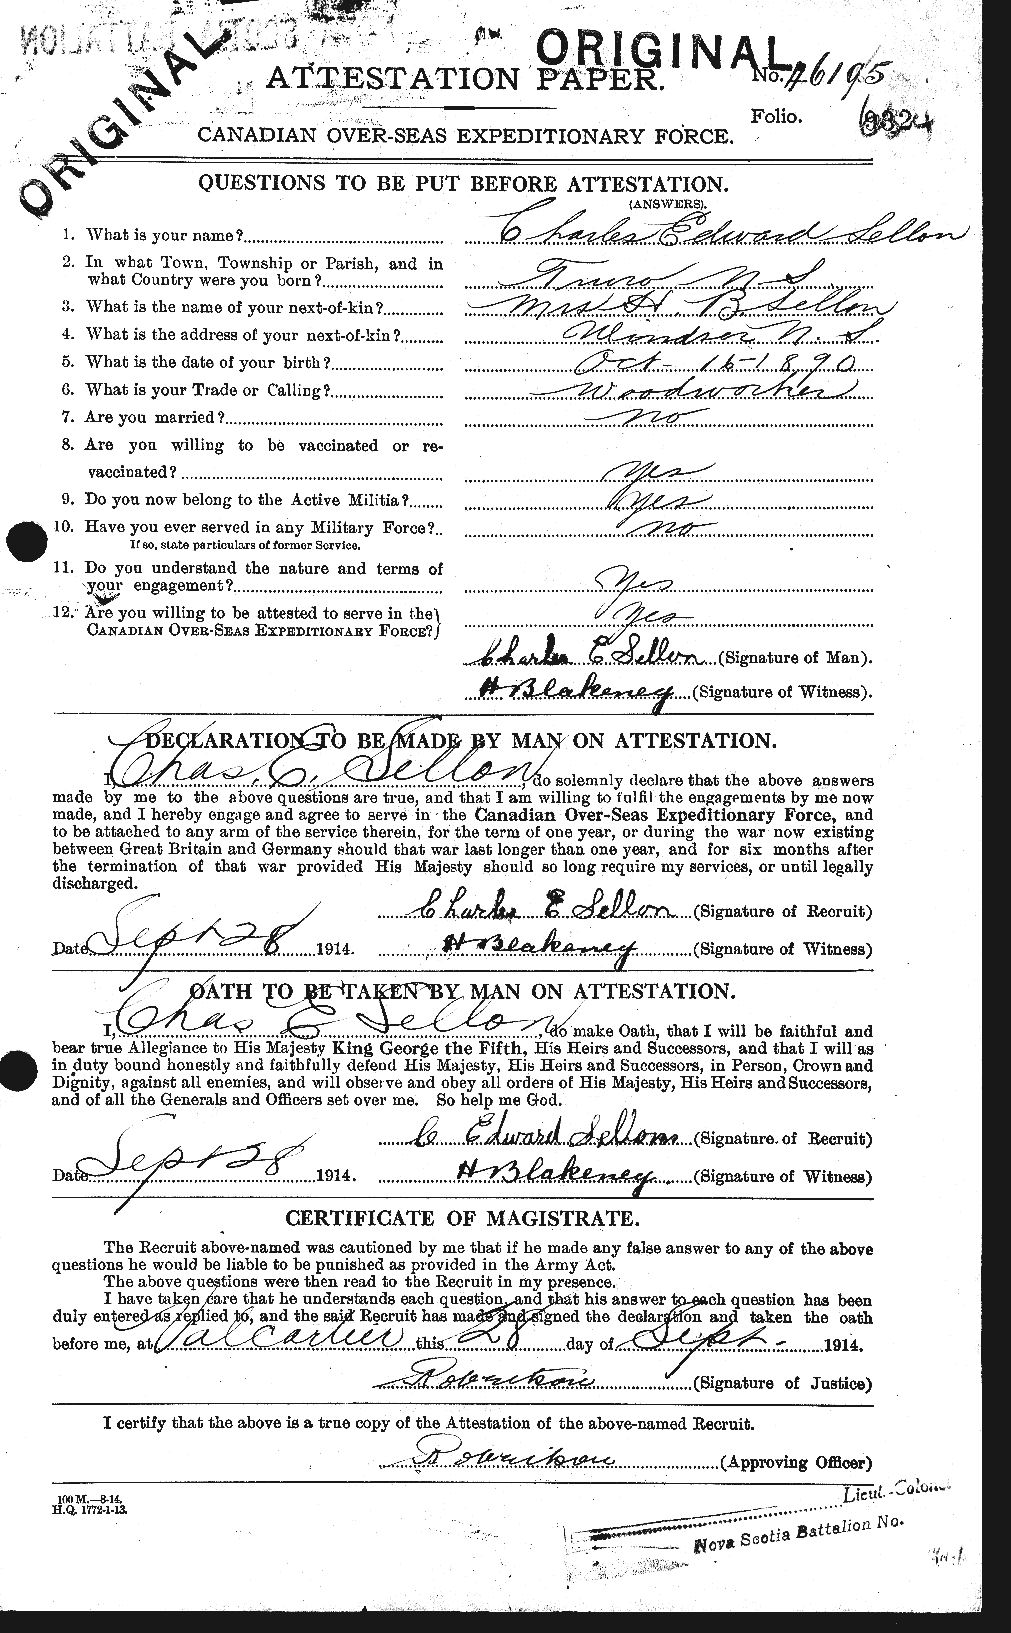 Dossiers du Personnel de la Première Guerre mondiale - CEC 087503a